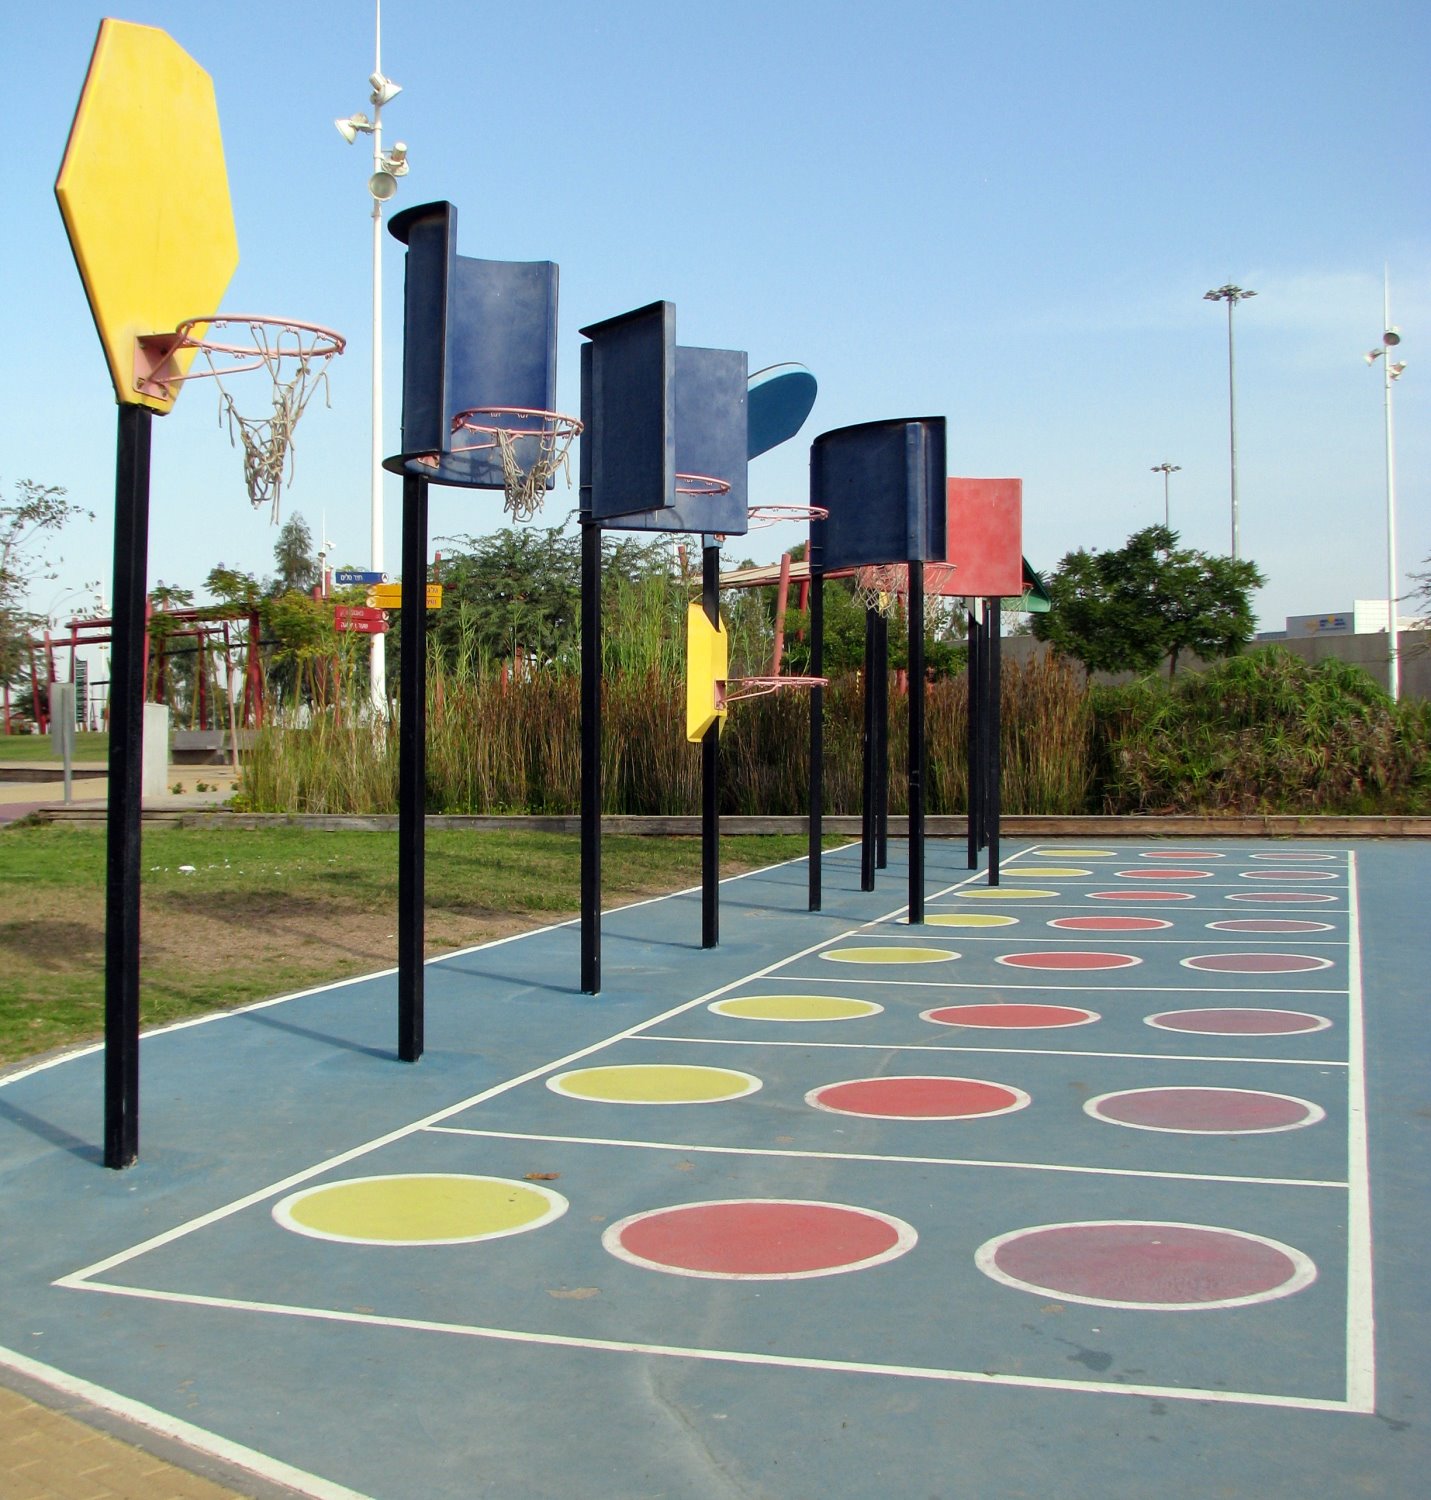 מתחם כדורסל בפארק מרמלדה. צילום: נועה גבאי